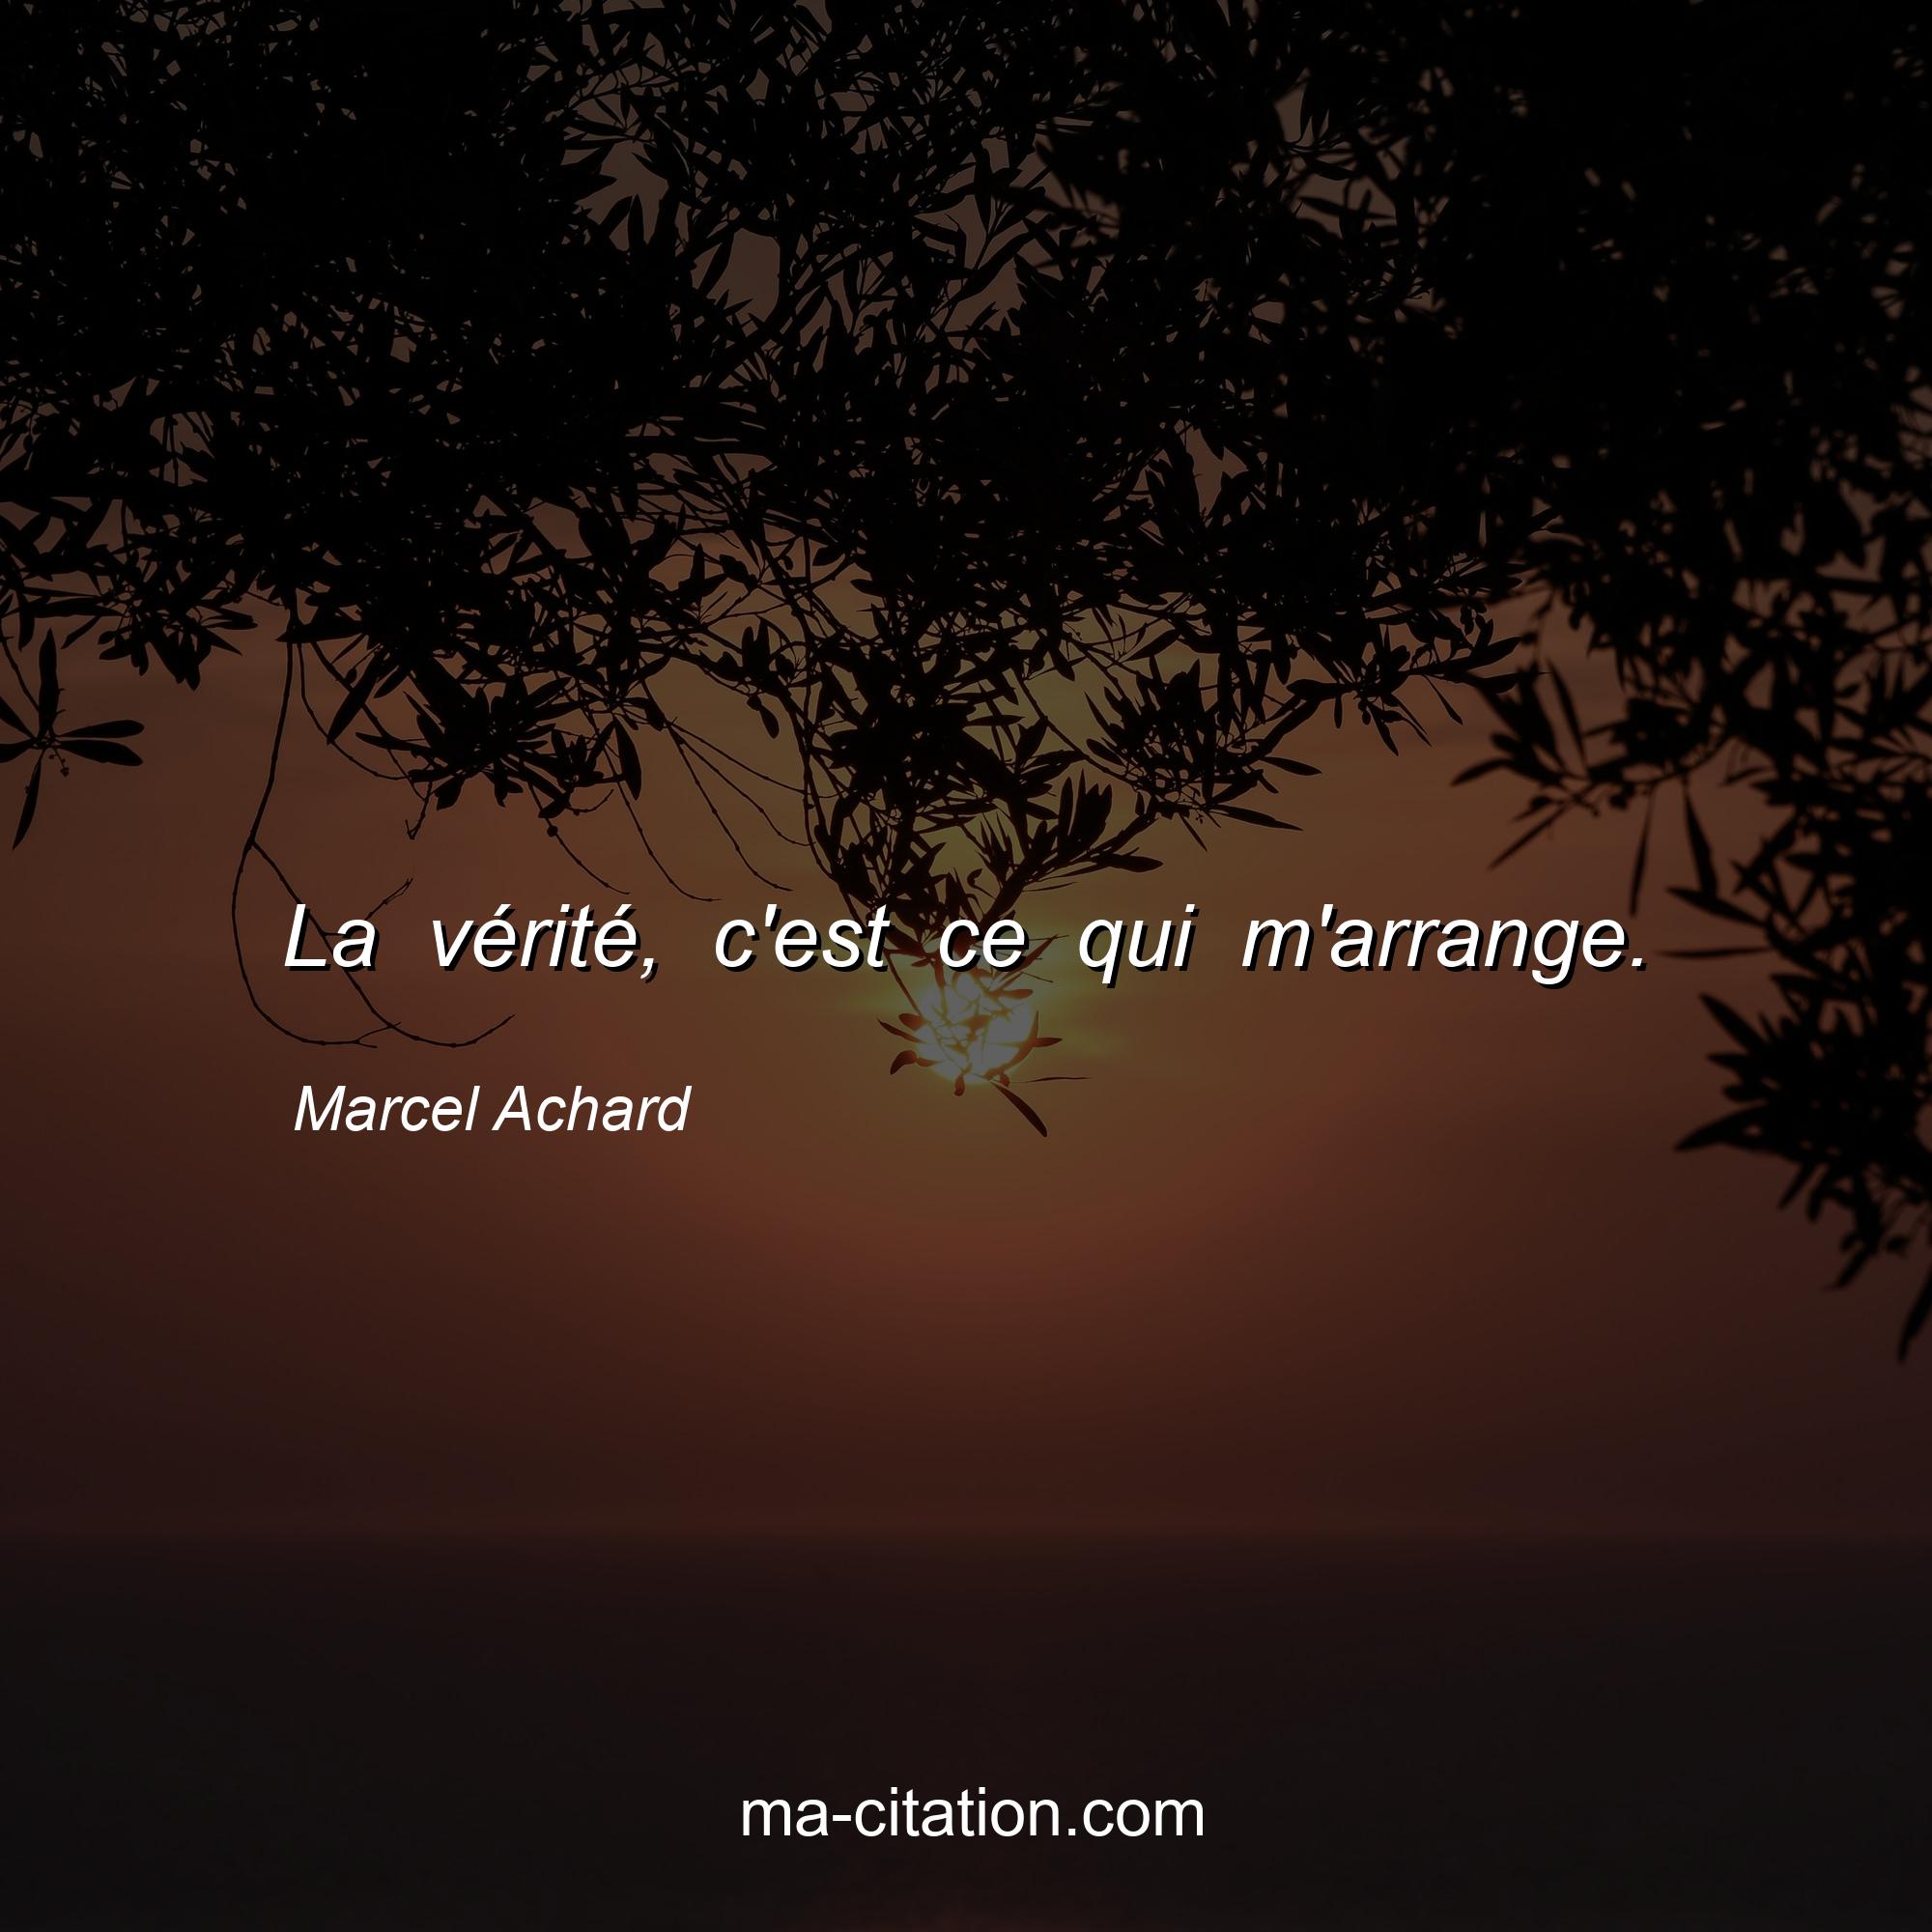 Marcel Achard : La vérité, c'est ce qui m'arrange.